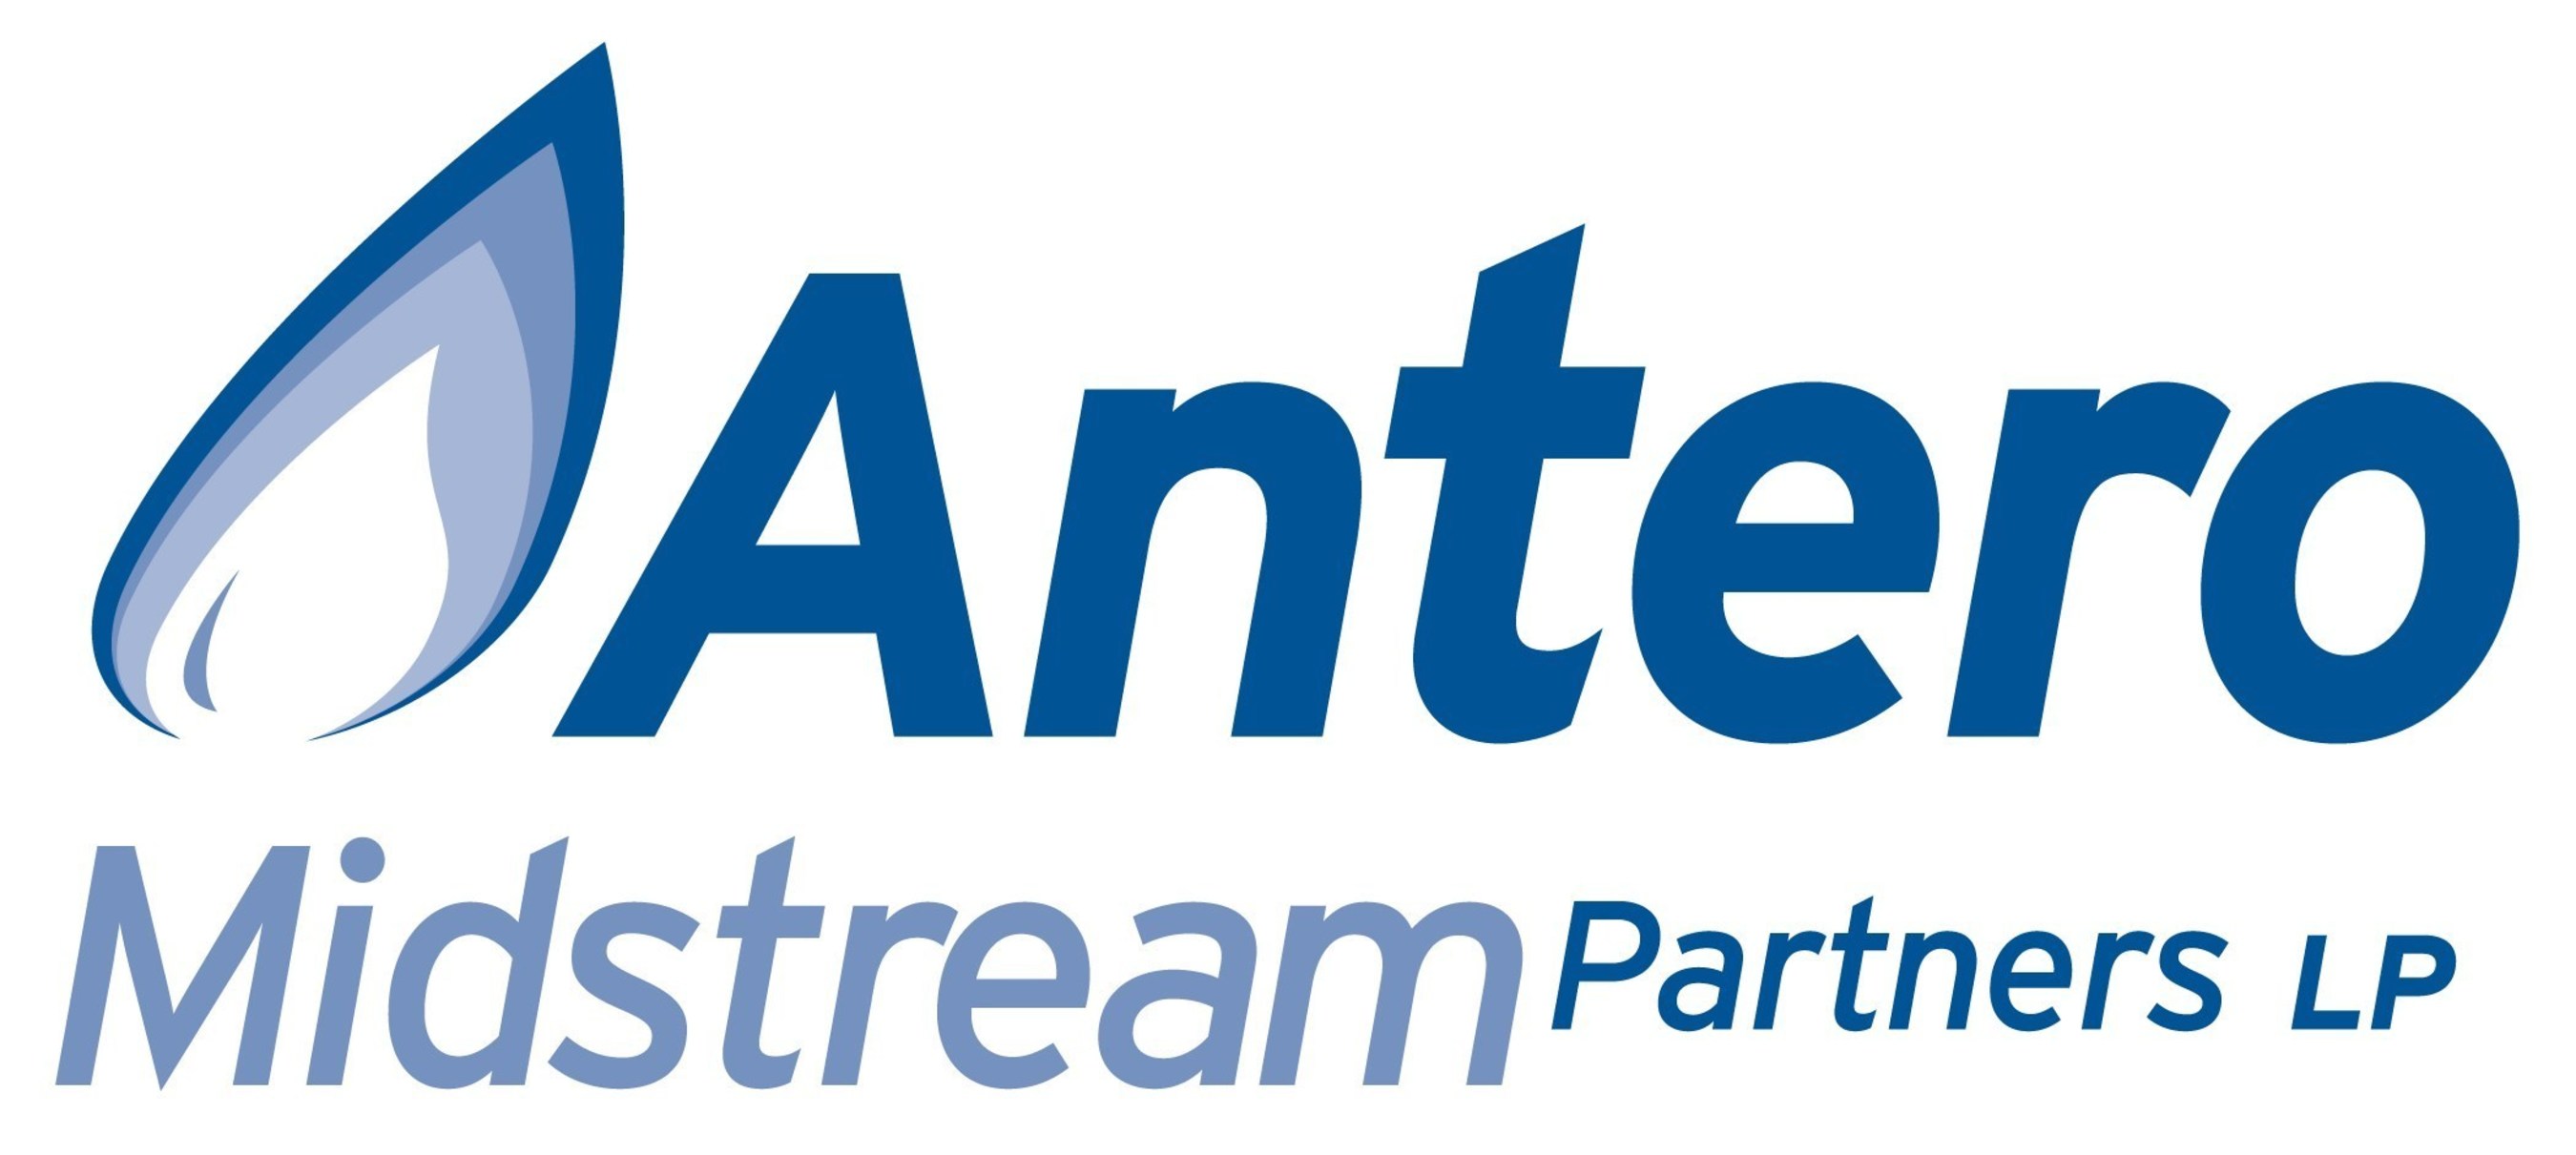 Antero Midstream Corp